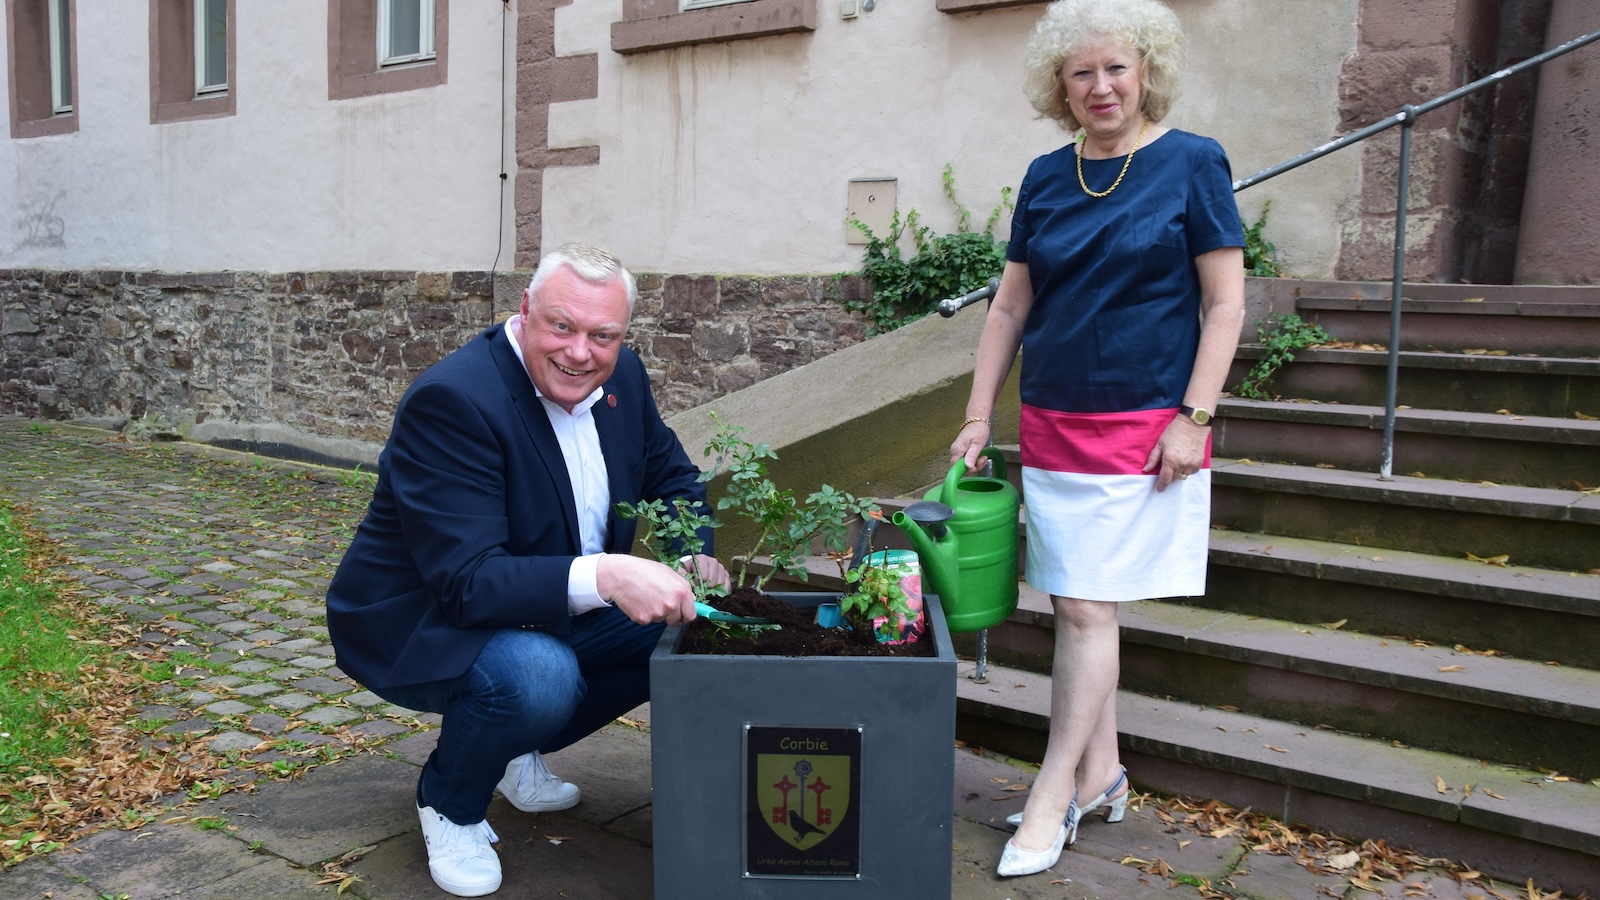 Städtepartnerschaft Höxter-Corbie: Symbolische Geschenke stärken die Freundschaft